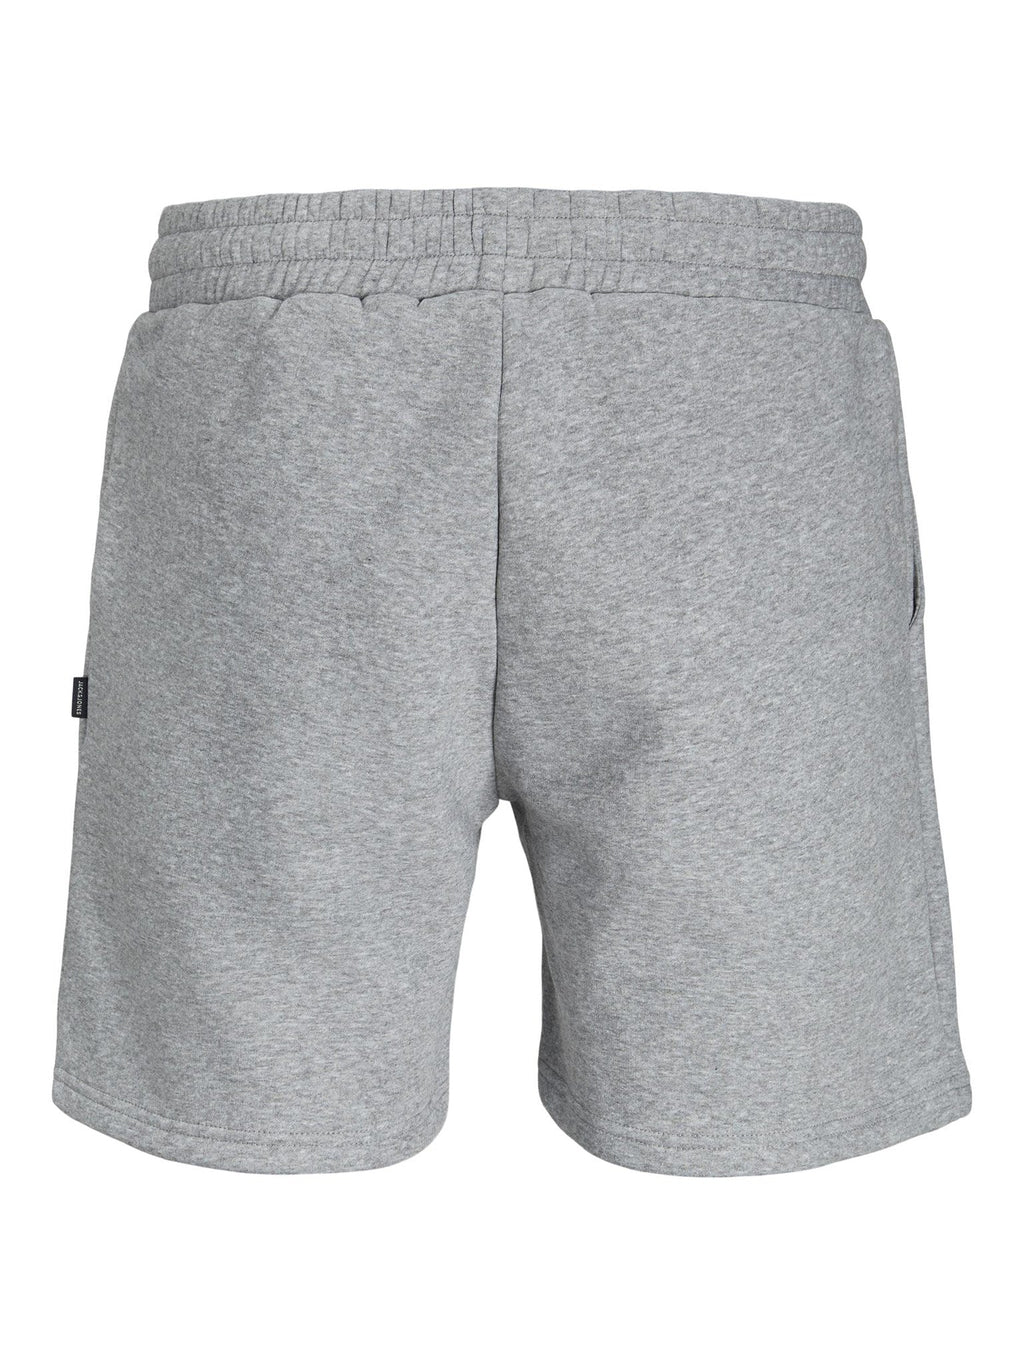 Zvjezdane znojne kratke hlače - svijetlo siva melanga